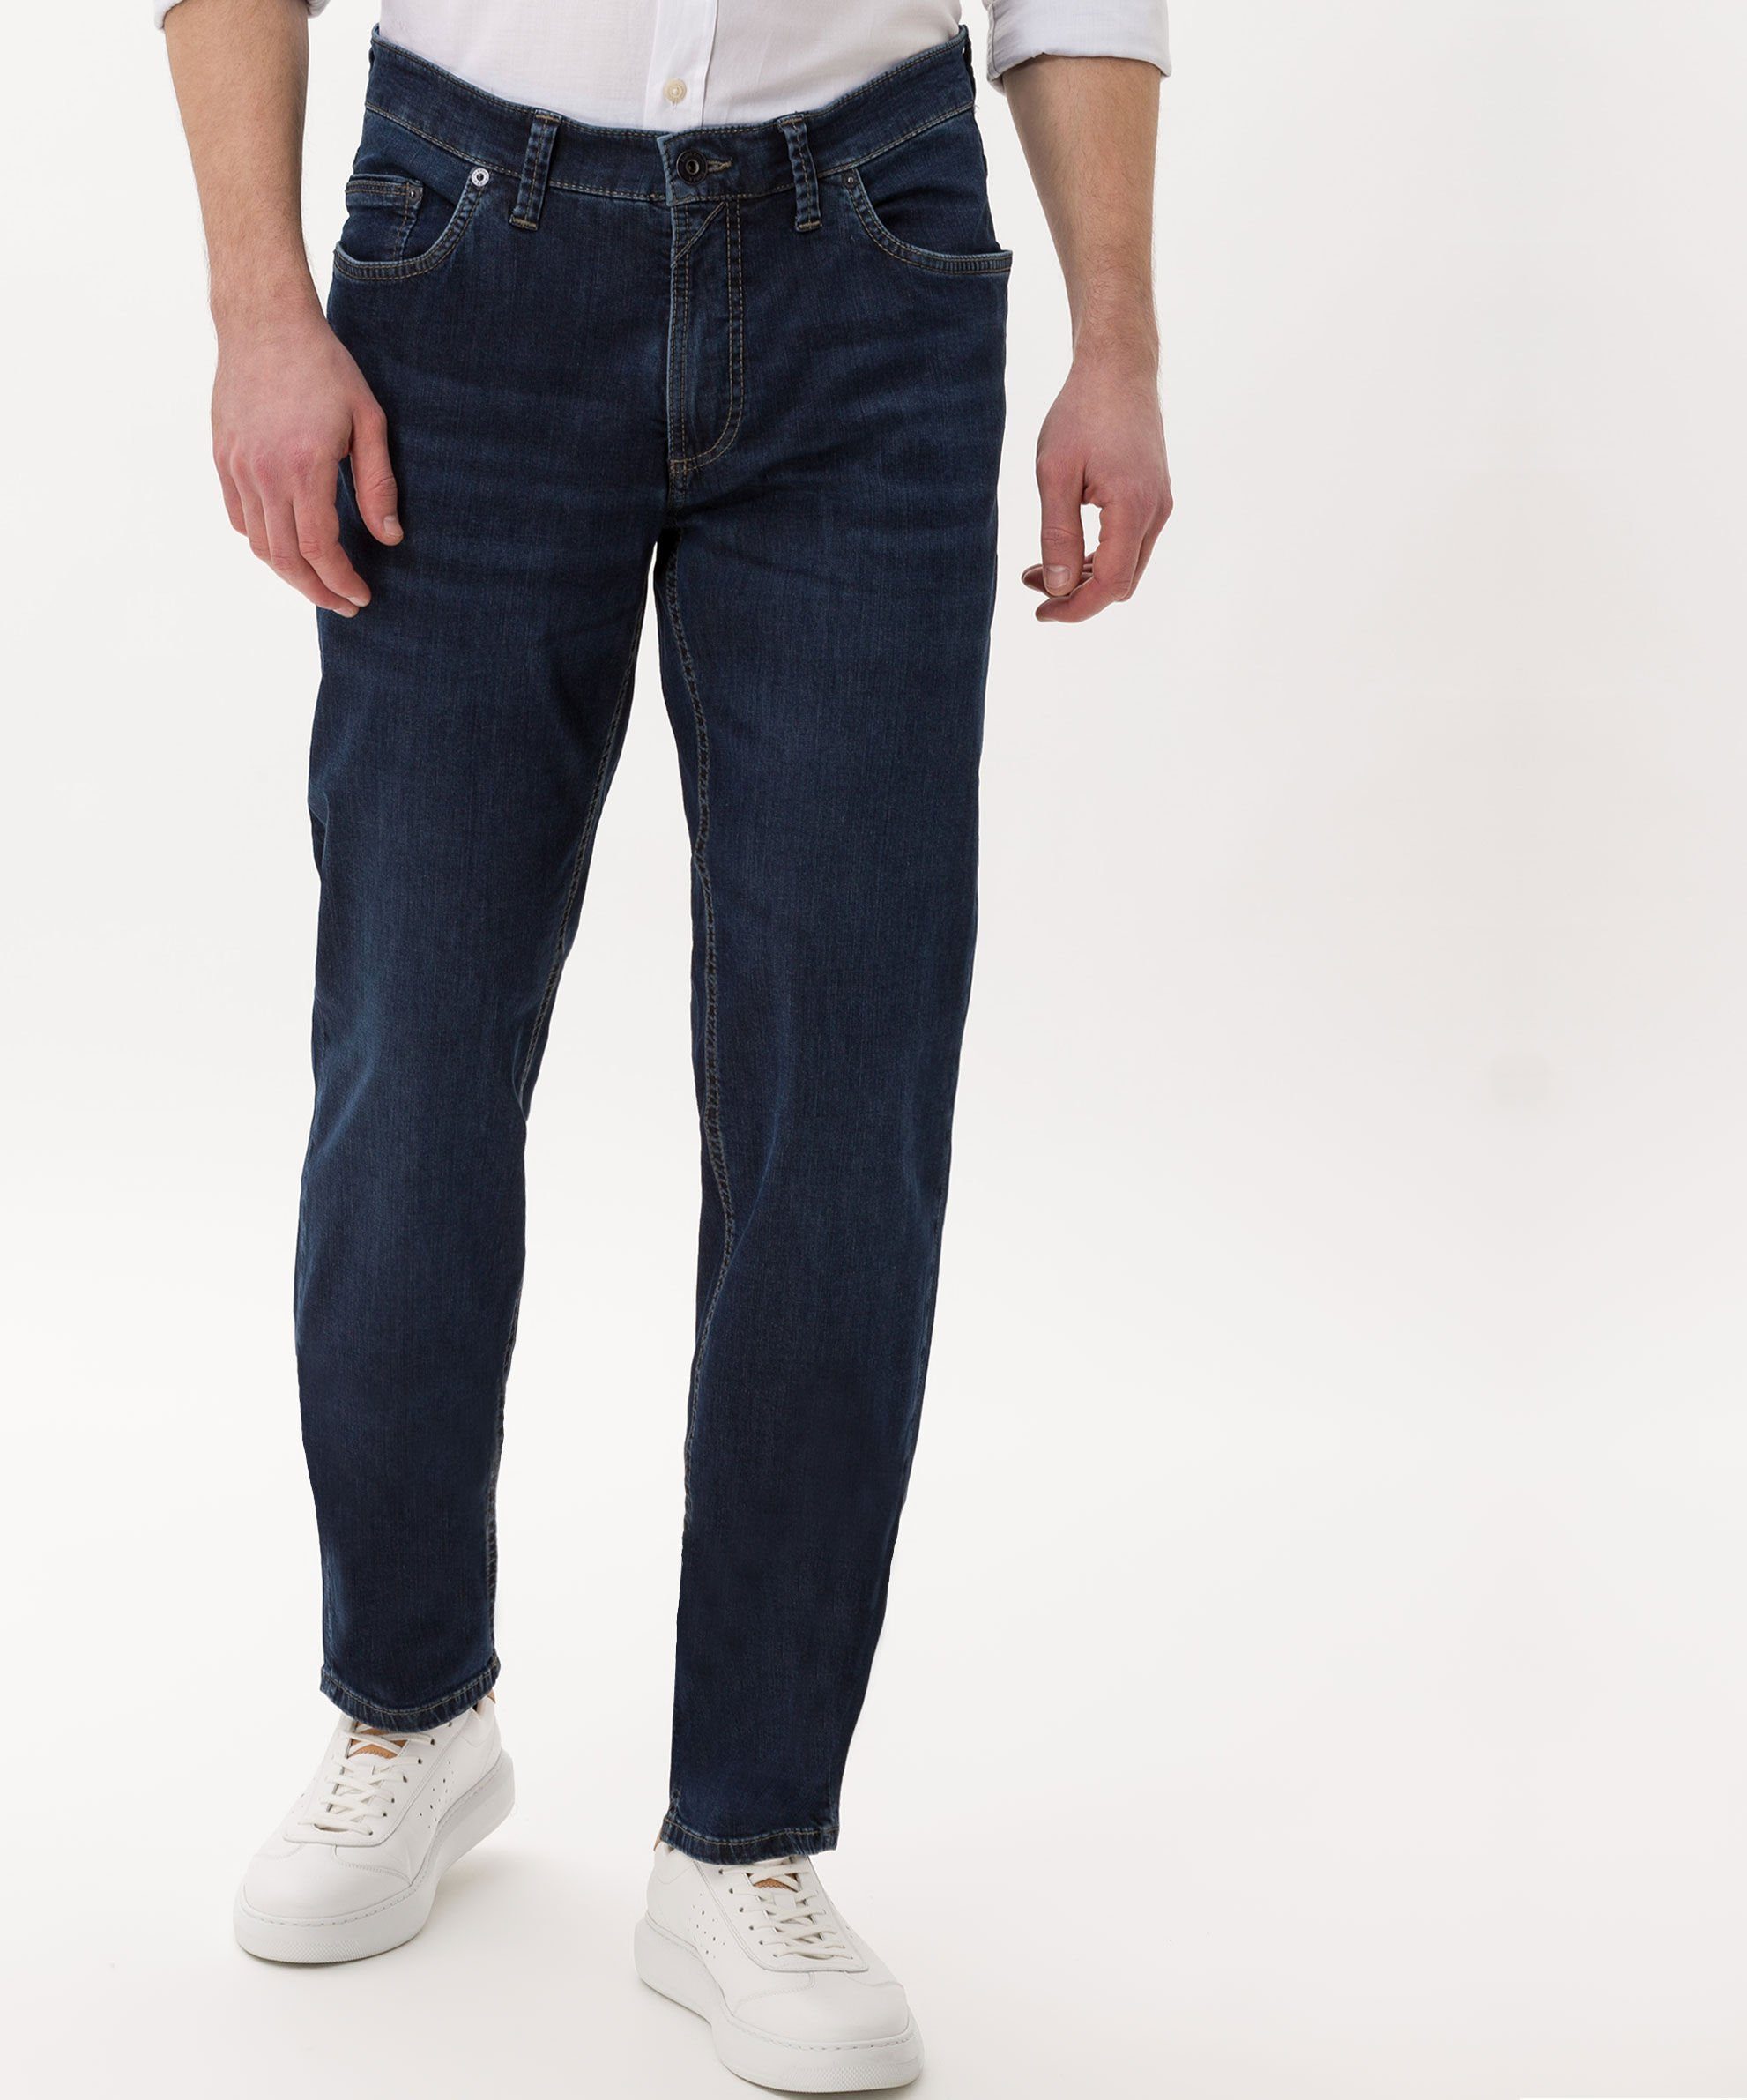 by Style blue EUREX BRAX 5-Pocket-Jeans Luke